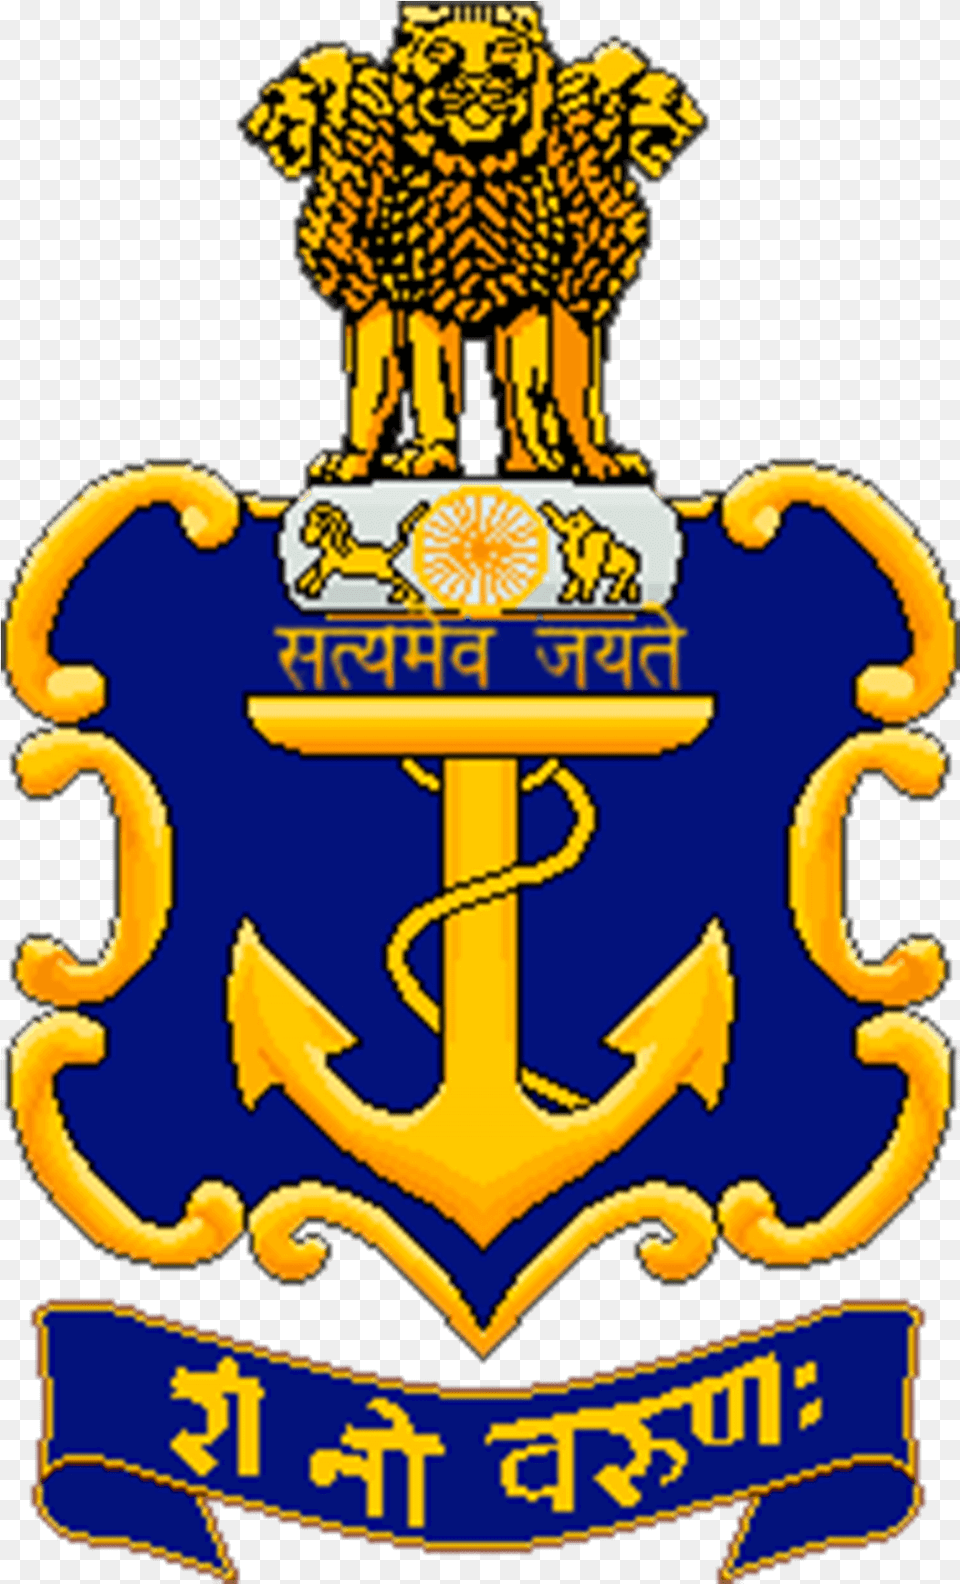 Download Indian Navy Logo Hd, Electronics, Hardware, Animal, Symbol Png Image